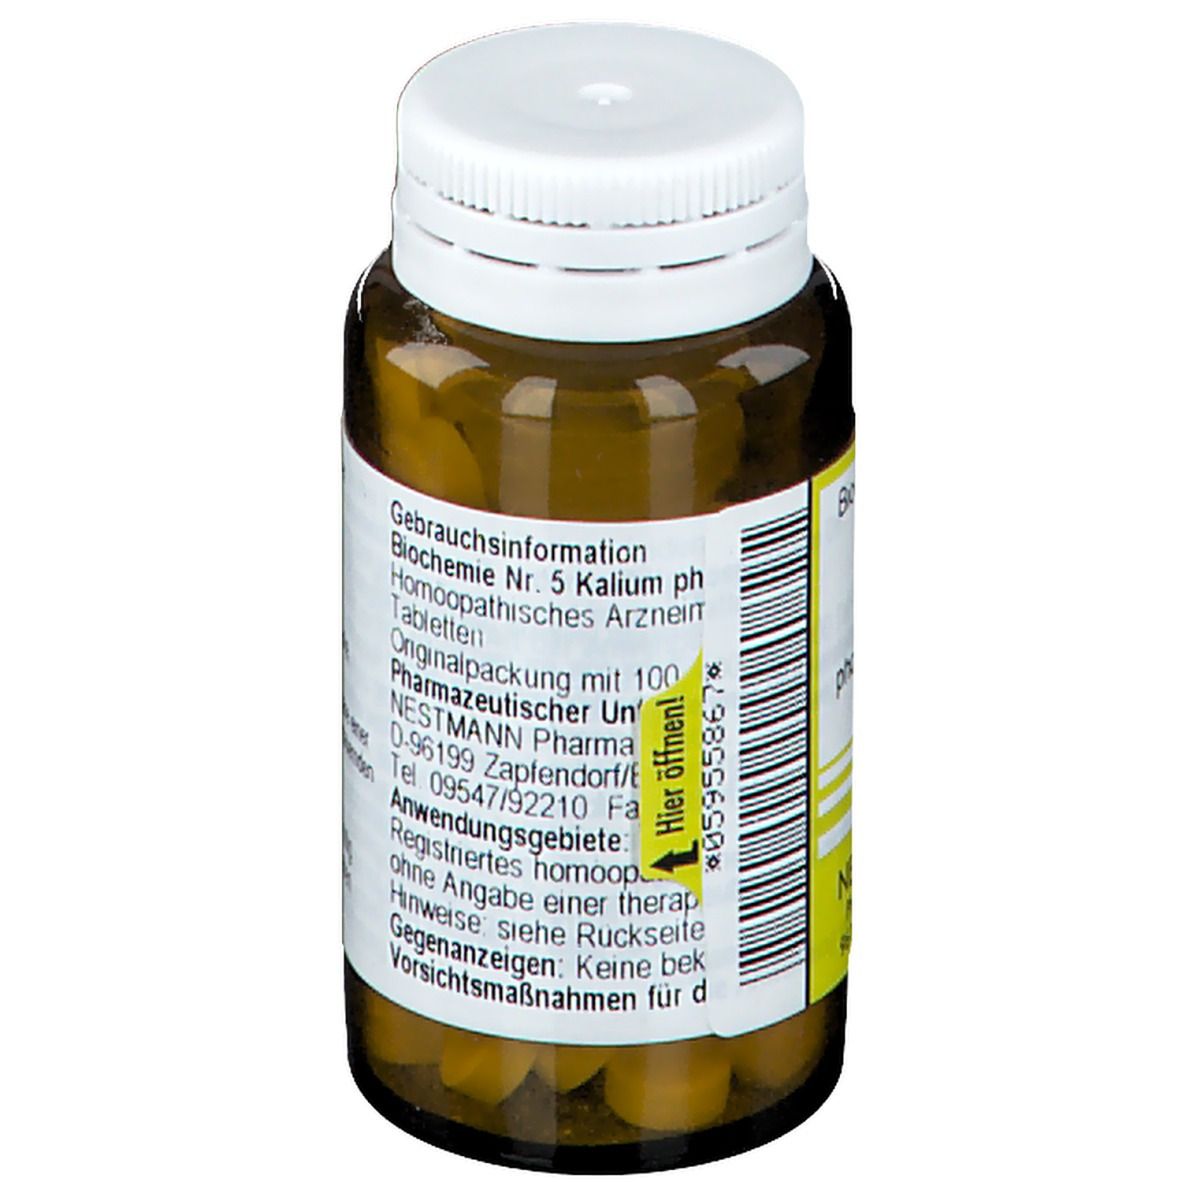 Biochemie 5 Kalium phosphoricum D 6 Tabletten